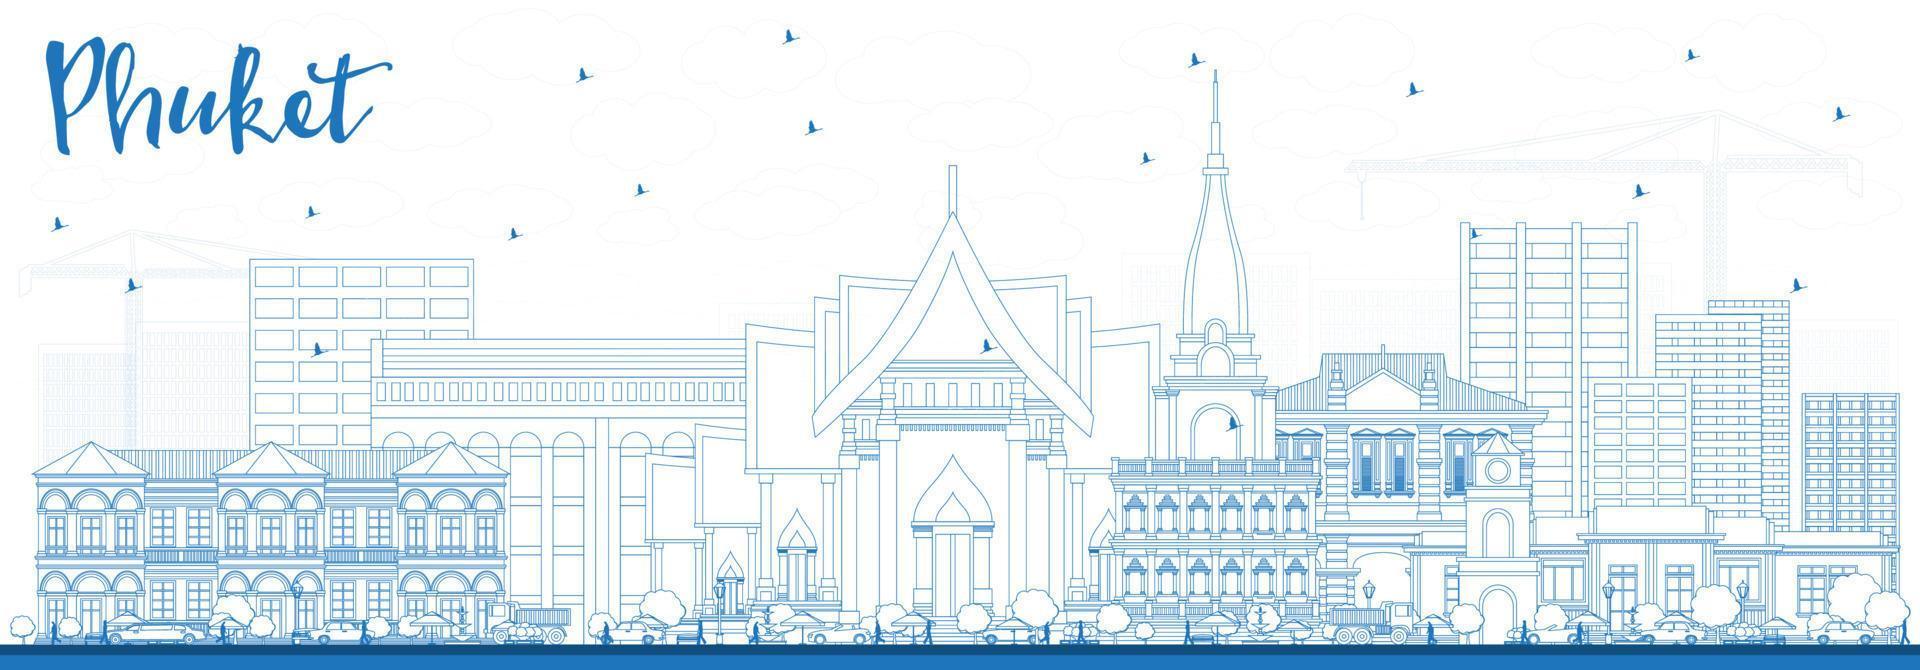 Décrire les toits de la ville de phuket en thaïlande avec des bâtiments bleus. vecteur